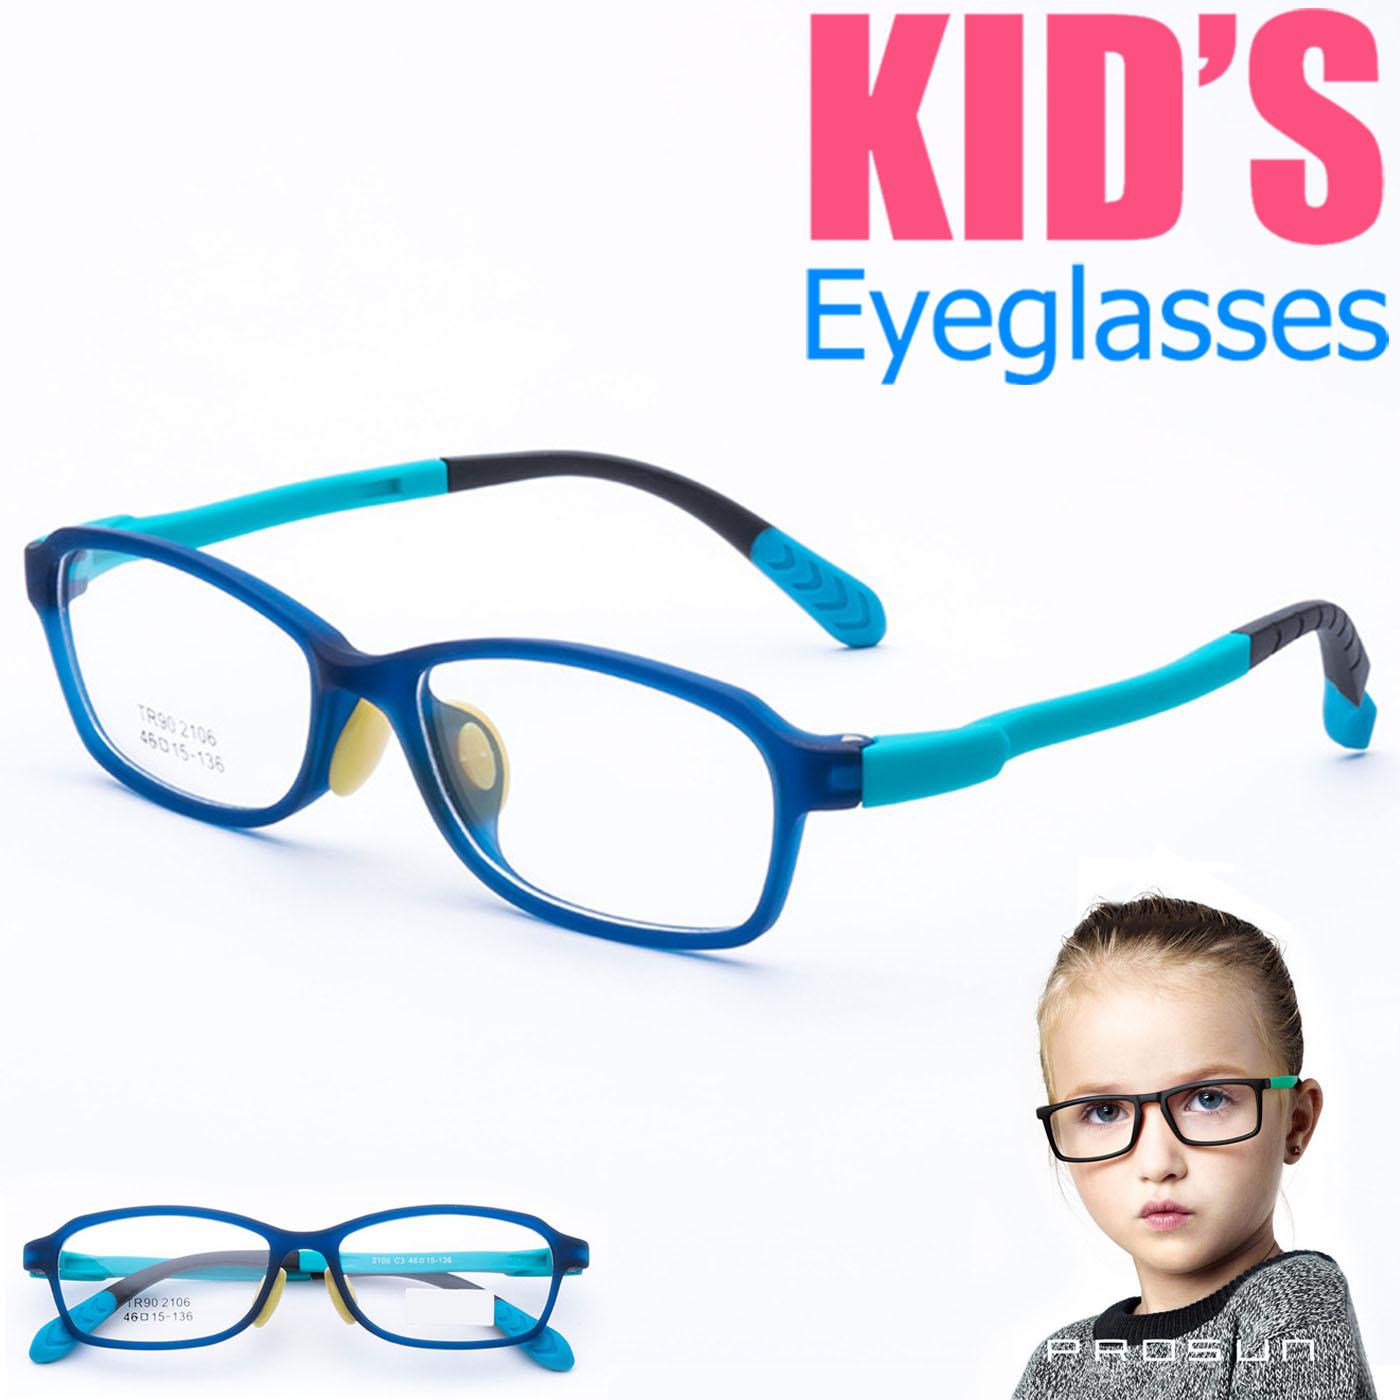 แว่นตาเกาหลีเด็ก Fashion Korea Children แว่นตาเด็ก รุ่น 2106 C-3 สีฟ้า กรอบแว่นตาเด็ก Rectangle ทรงสี่เหลี่ยมผืนผ้า Eyeglass baby frame ( สำหรับตัดเลนส์ ) วัสดุ TR-90 เบาและยืดหยุนได้สูง ขาข้อต่อ Kid eyewear Glasses